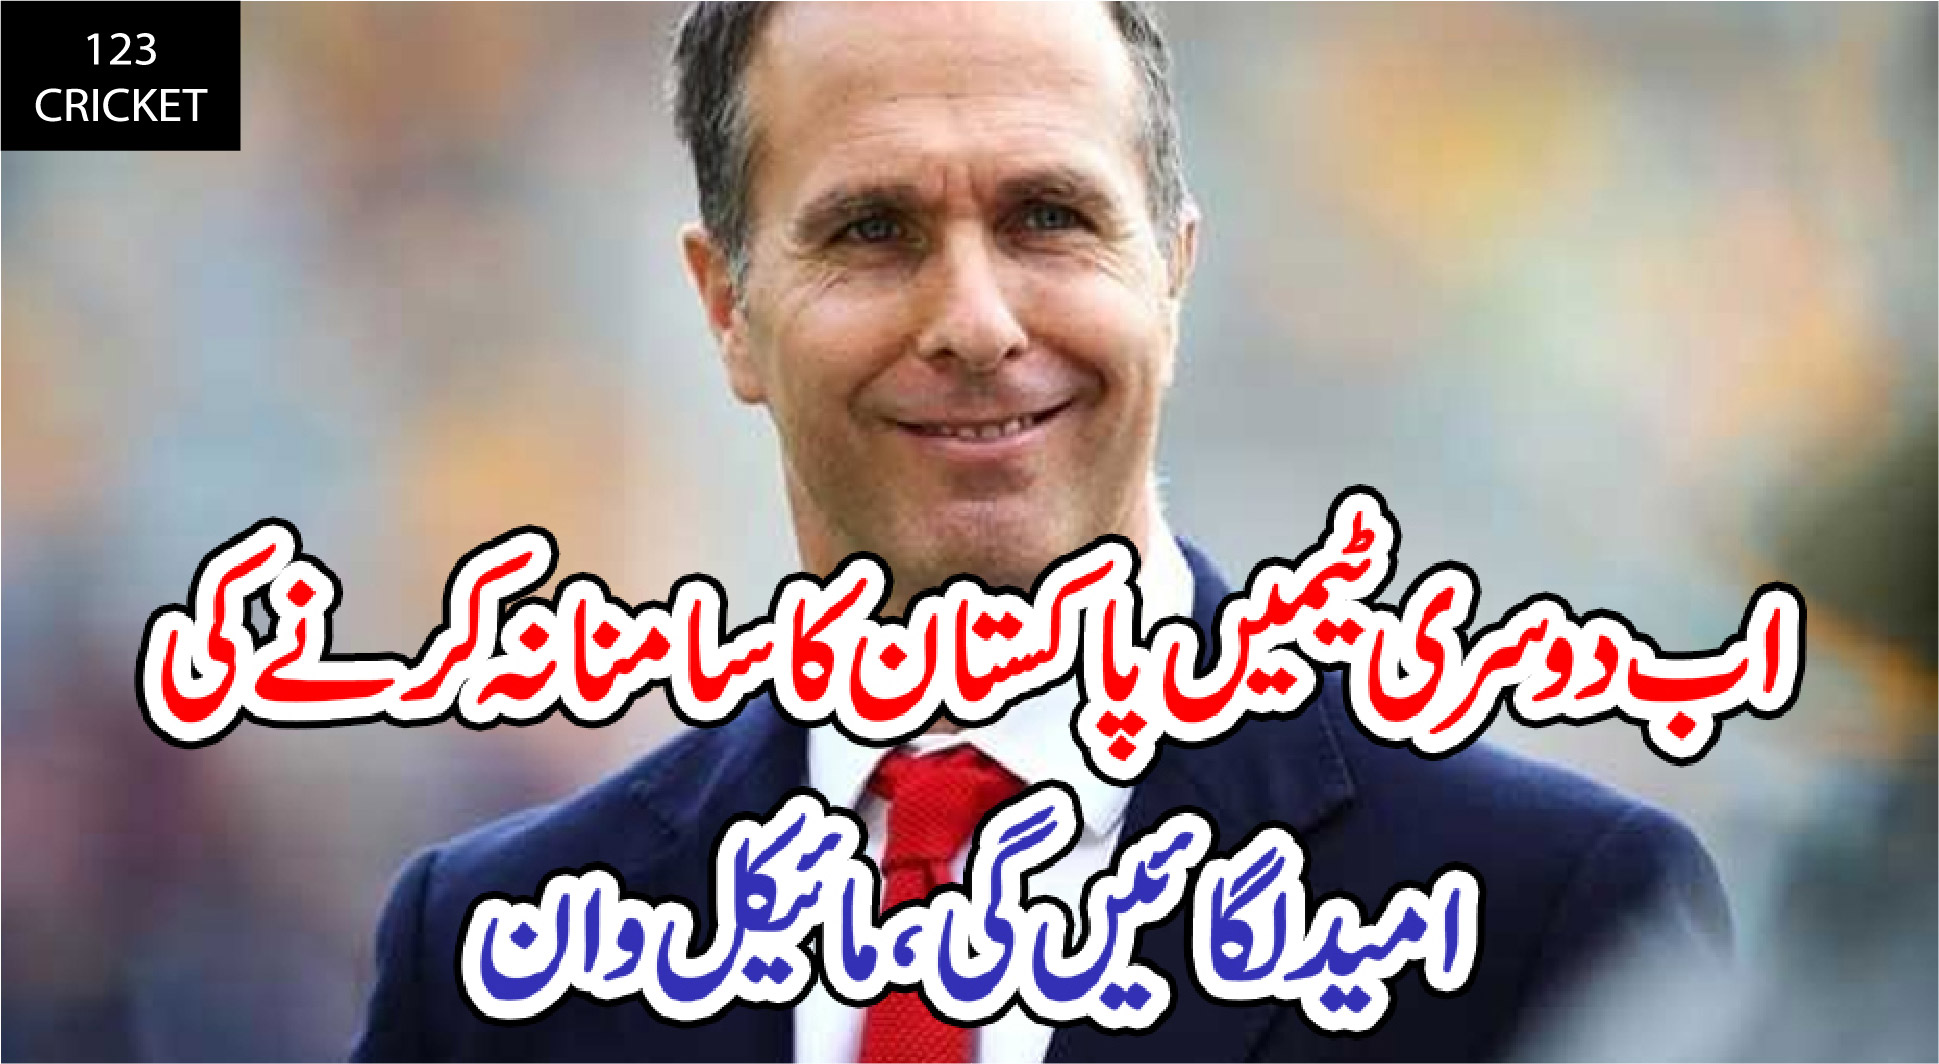 اب دوسری ٹیمیں پاکستان کا سامنا نہ کرنے کی امید لگائیں گی، مائیکل وان